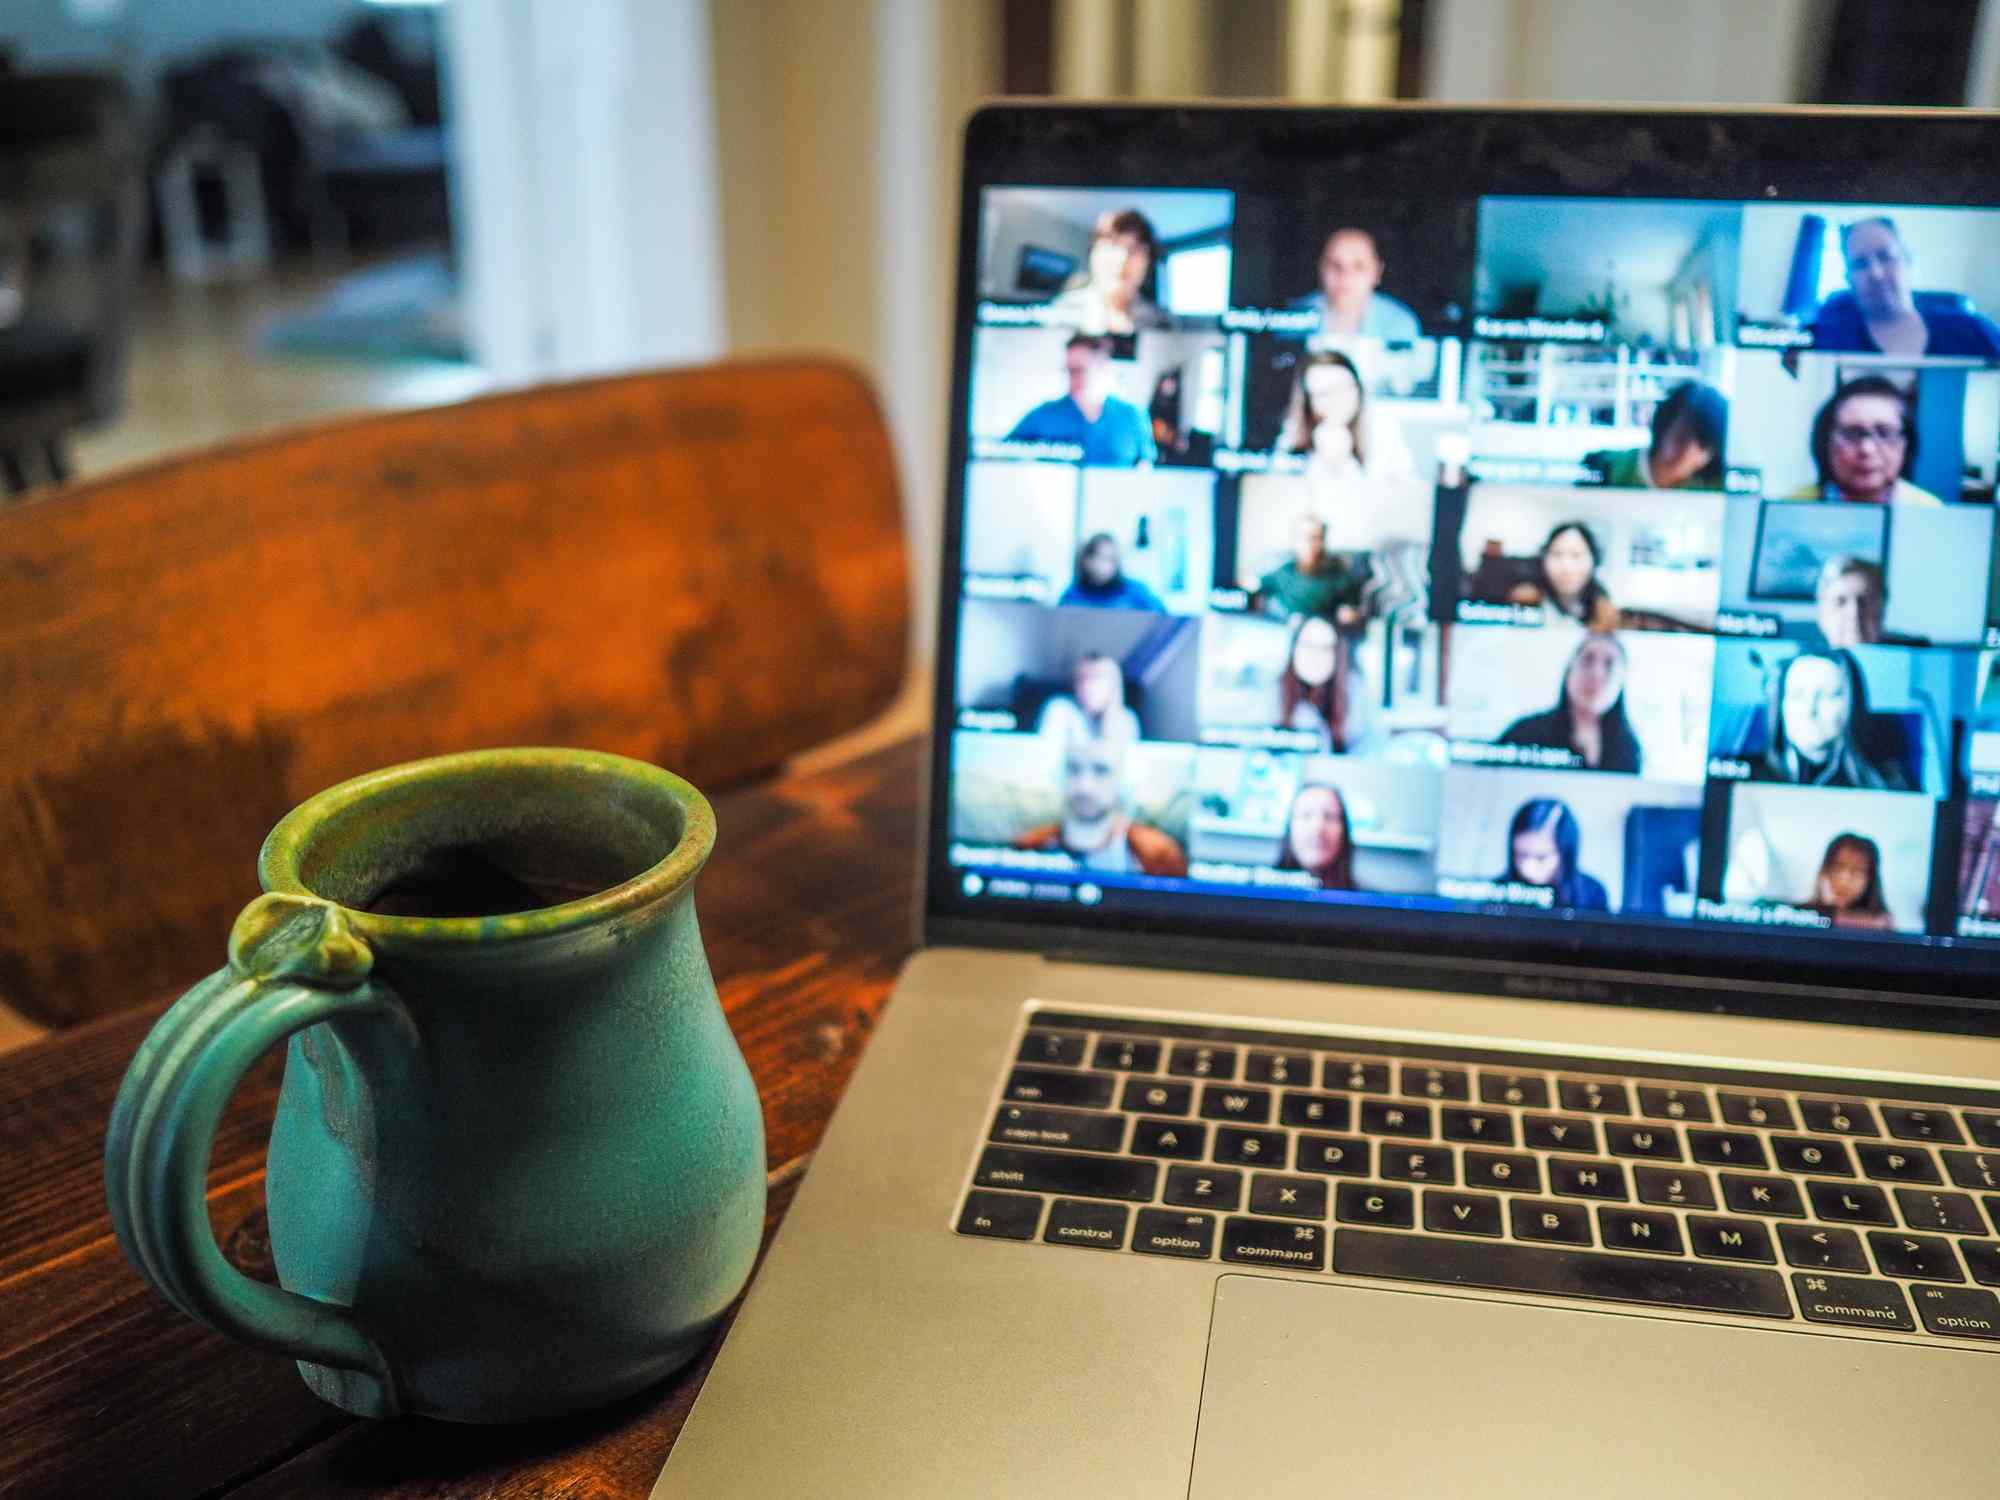 Otevřený notebook na kuchyňské desce zobrazující videohovor více osob s šálkem kávy poblíž. 